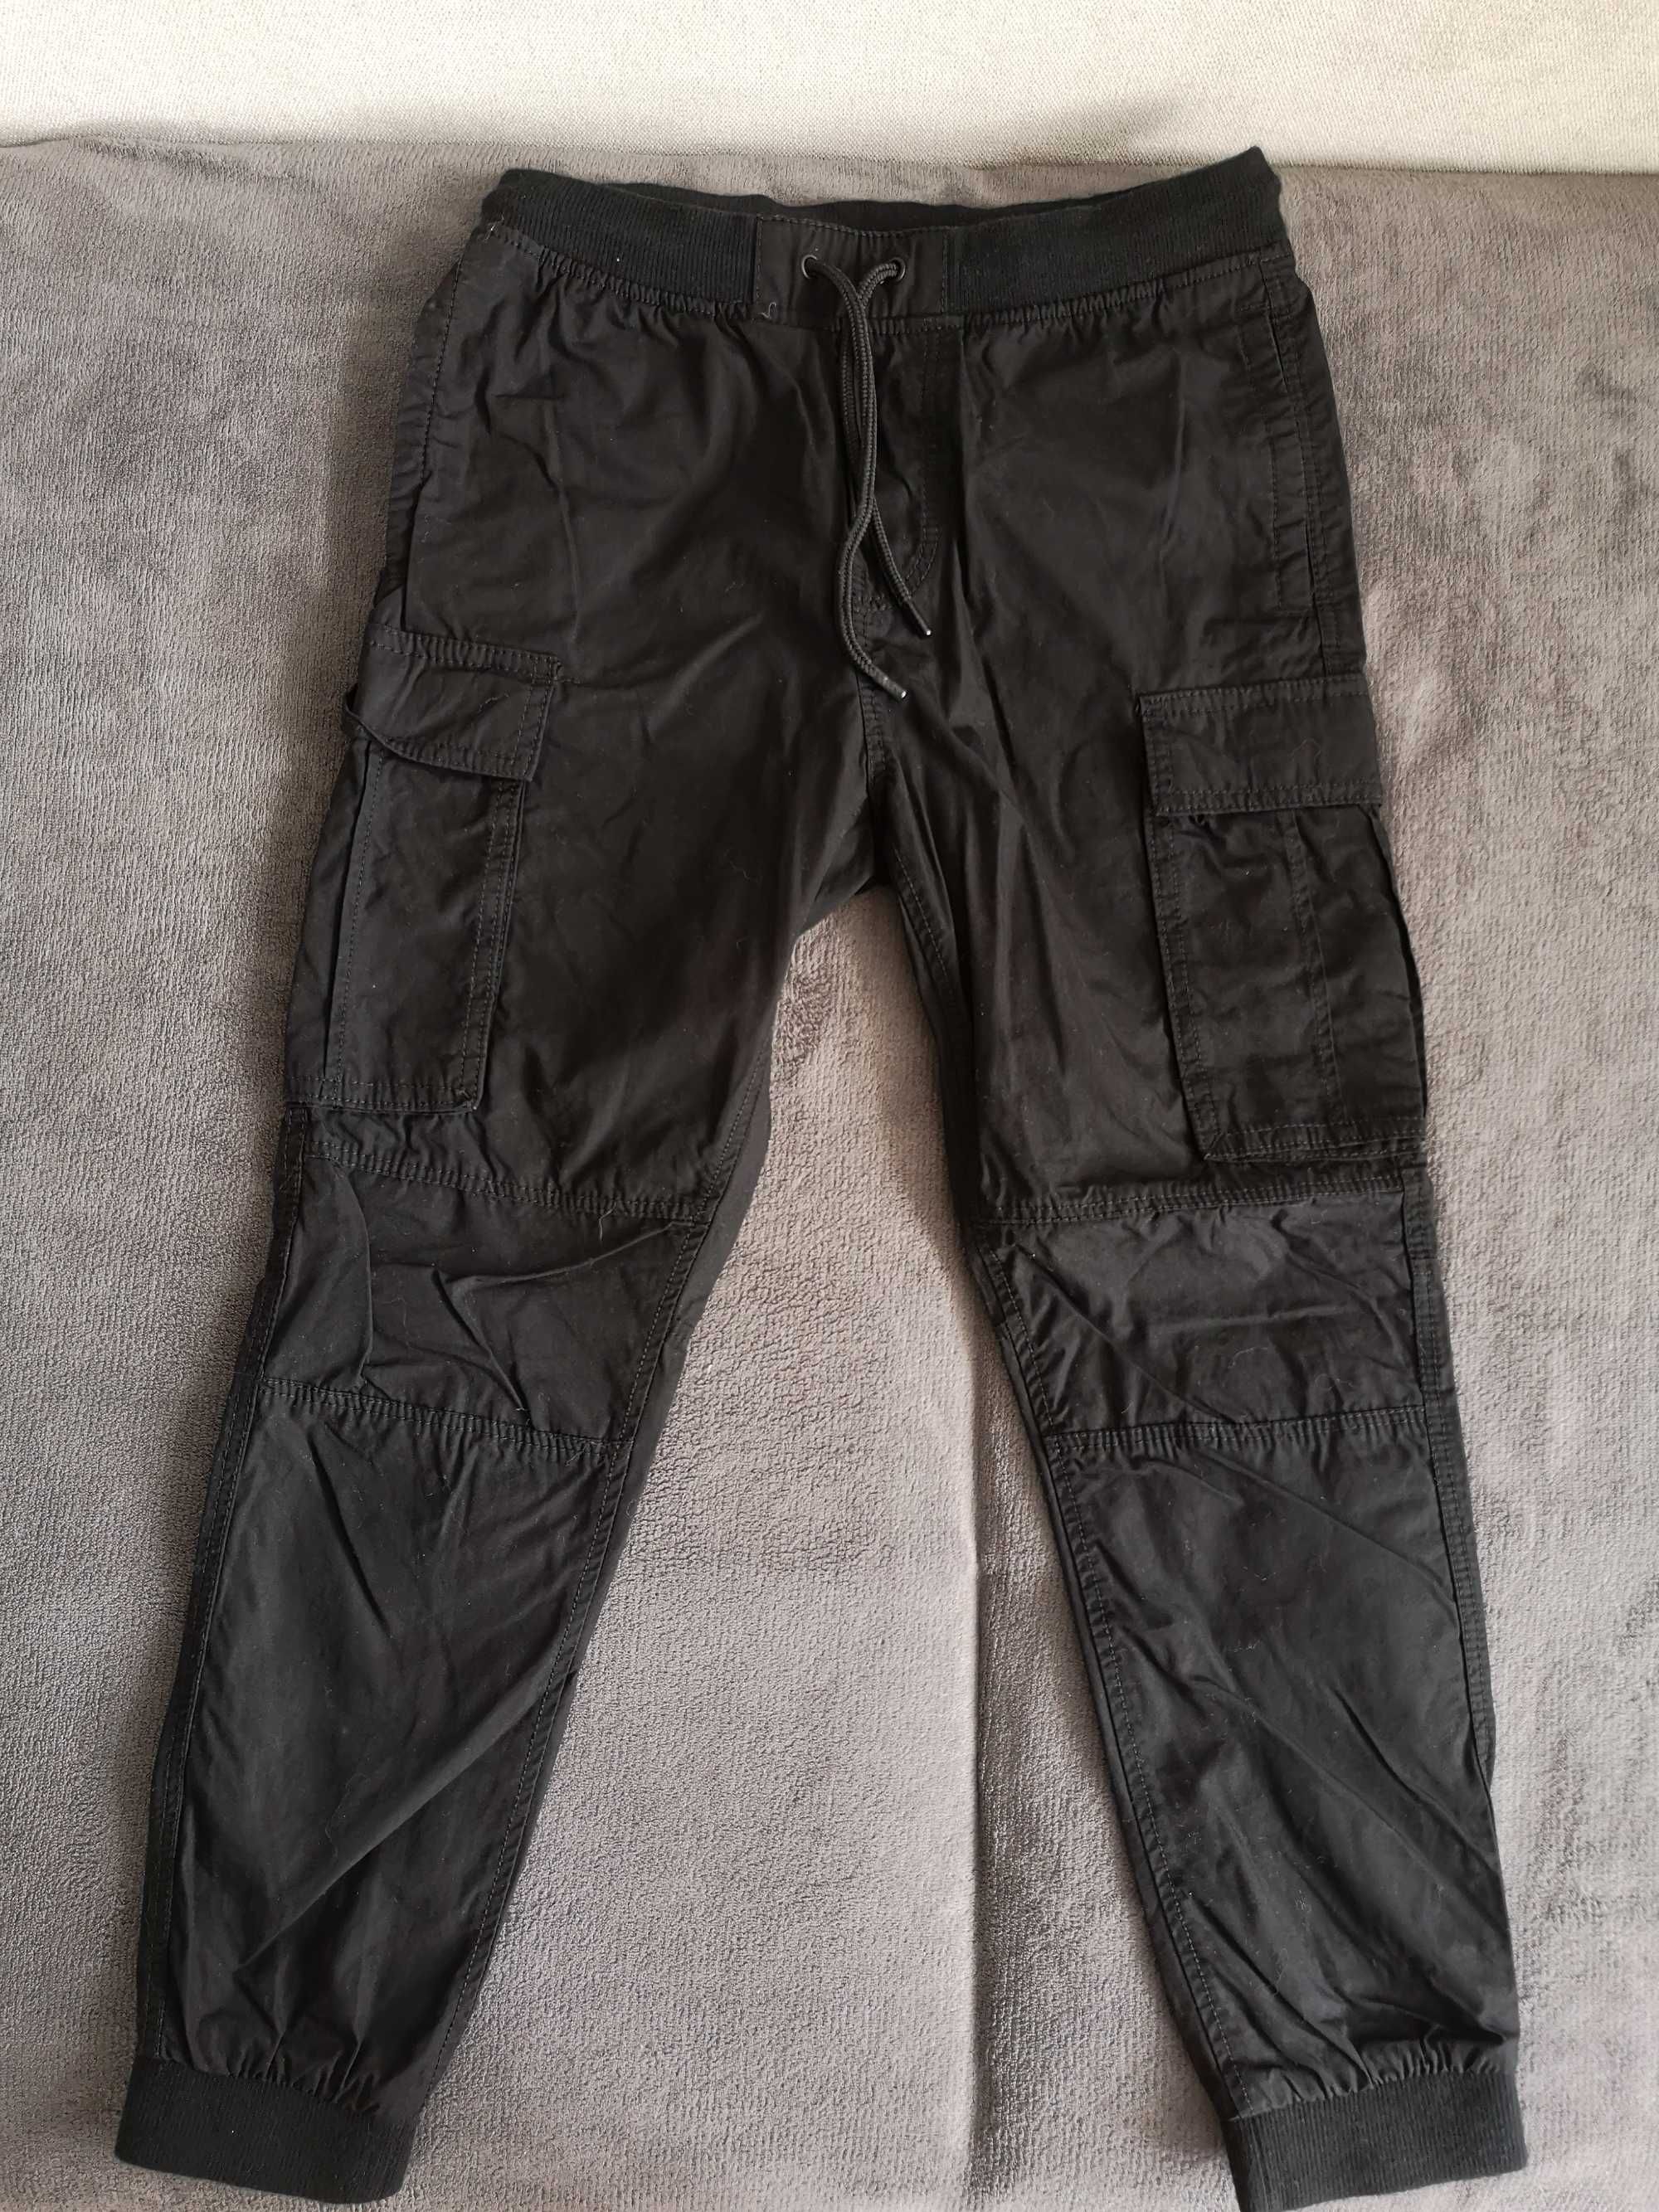 Spodnie/ joggersy cargo z H&M r. 140